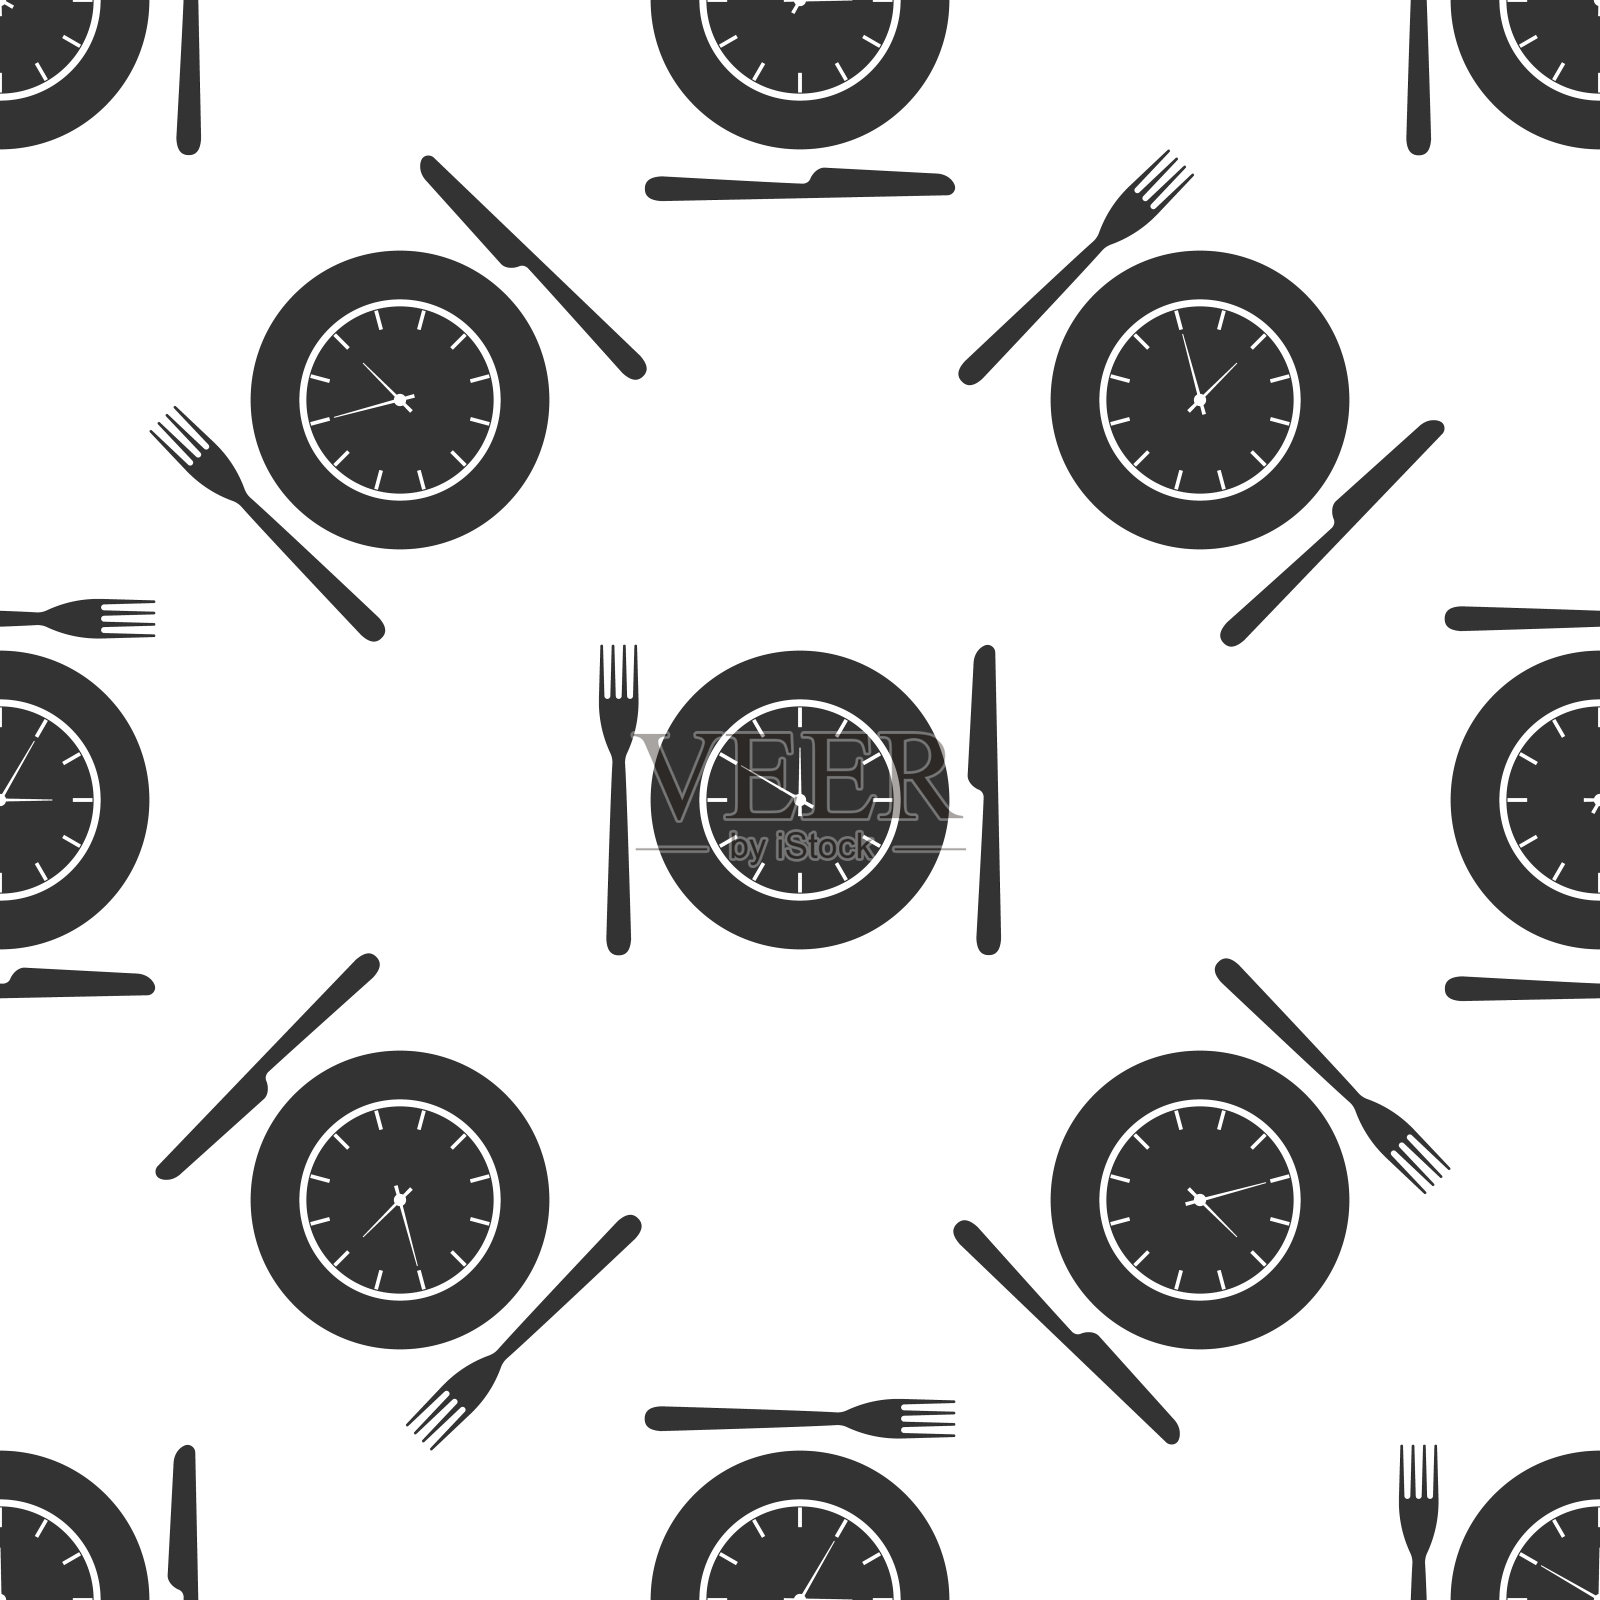 盘子与时钟，叉子和刀的图标无缝模式上的白色背景。午餐时间。饮食、营养制度、用餐时间及饮食观念。平面设计。矢量图插画图片素材